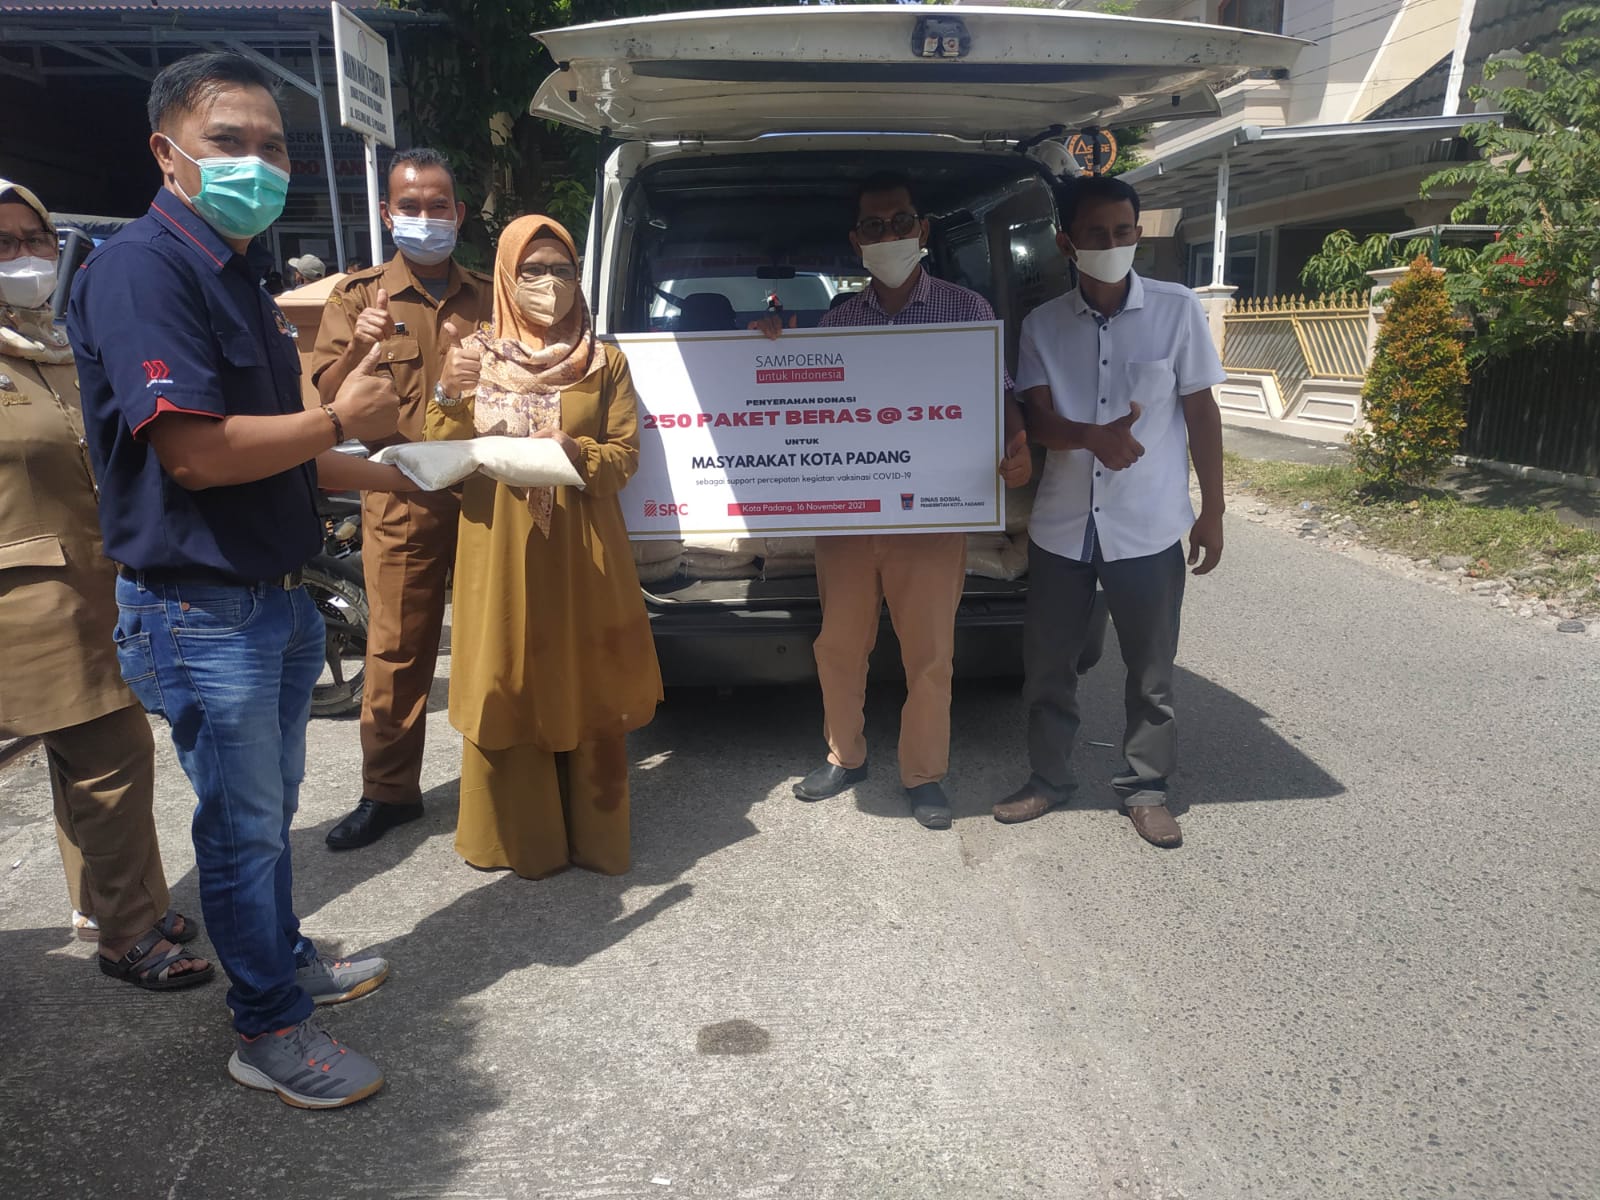 Penyerahan beras dari PT HM Sampoerna ke Dinas Sosial Kota Padang. (Foto: Dok. Dinsos Padang)